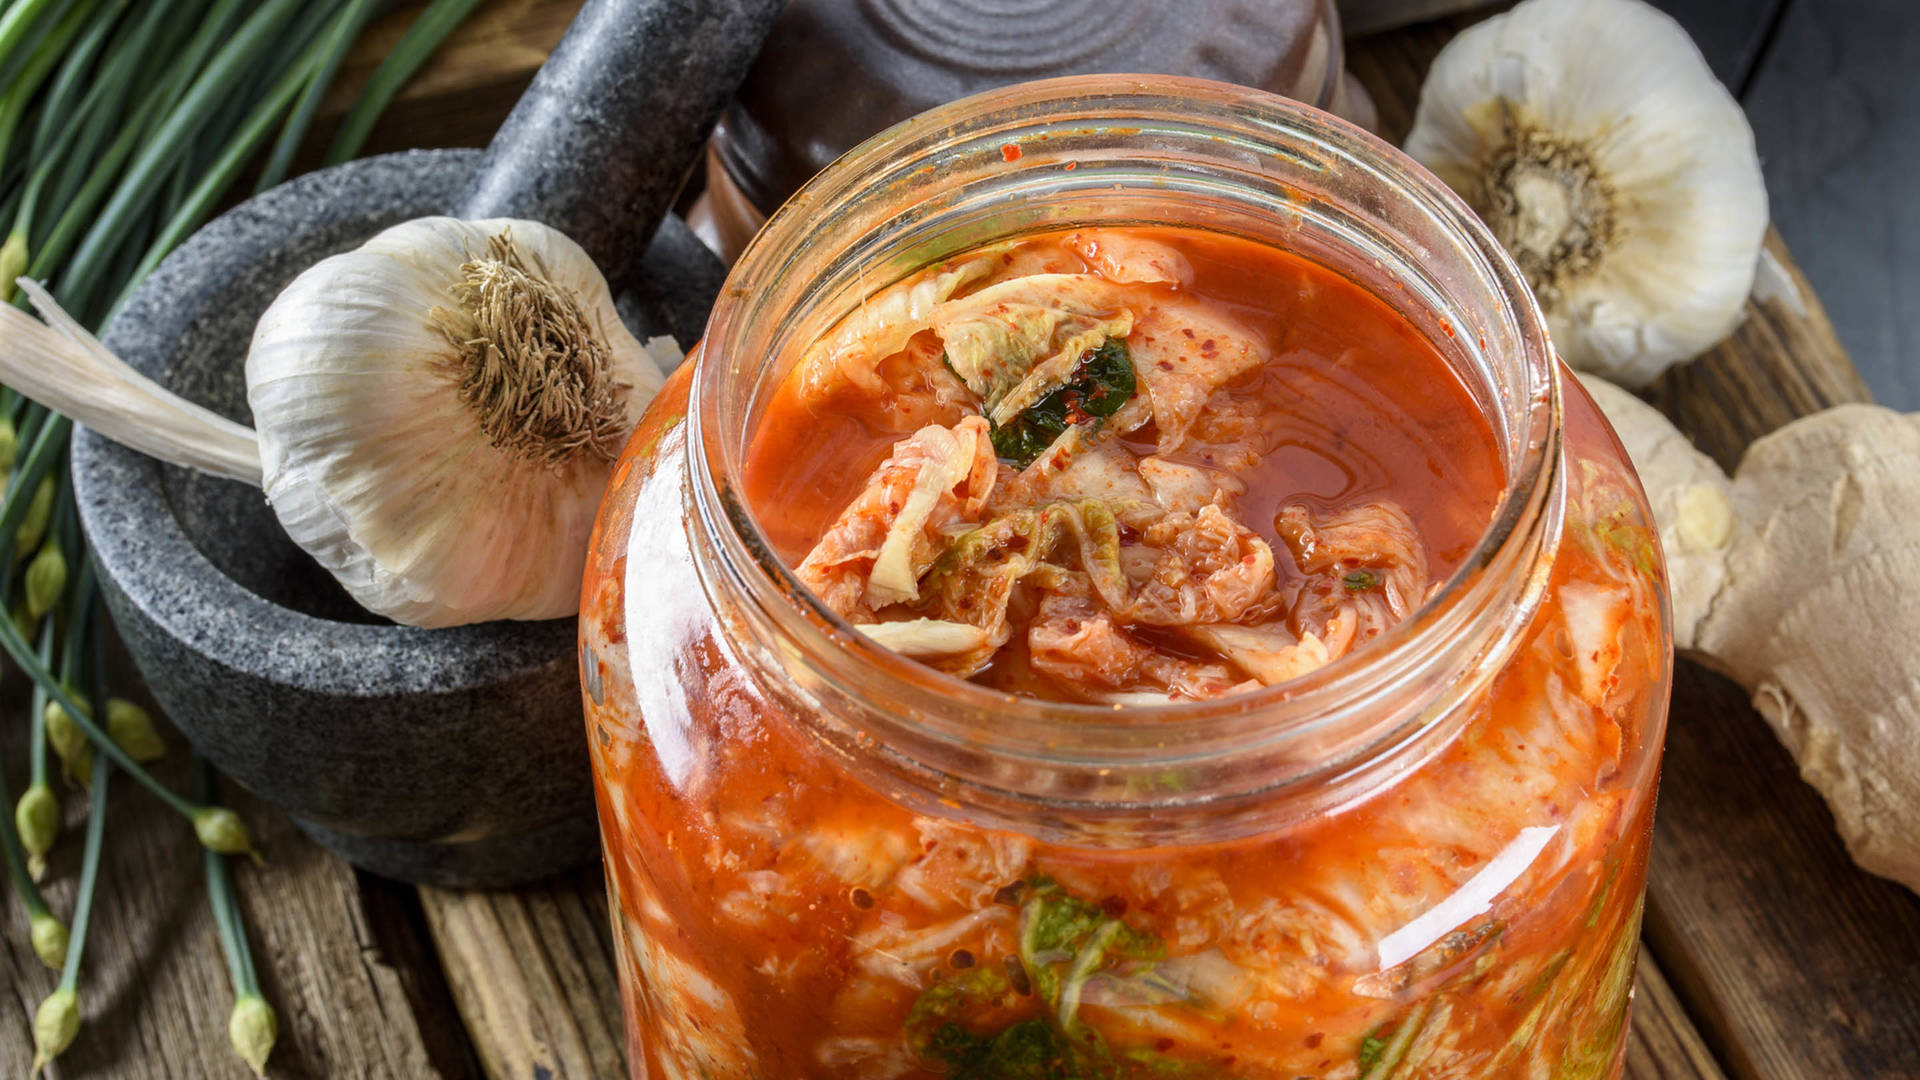 kimchi tendencias alimenticias de 2019 